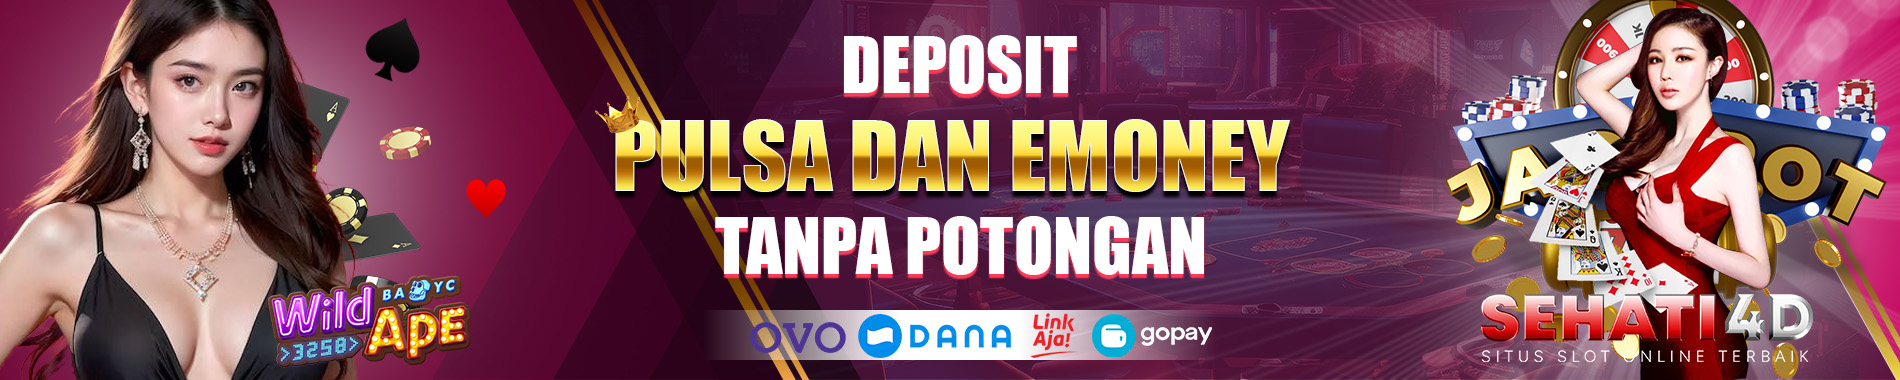 Deposit Pulsa % EMoney Tanpa Potongan